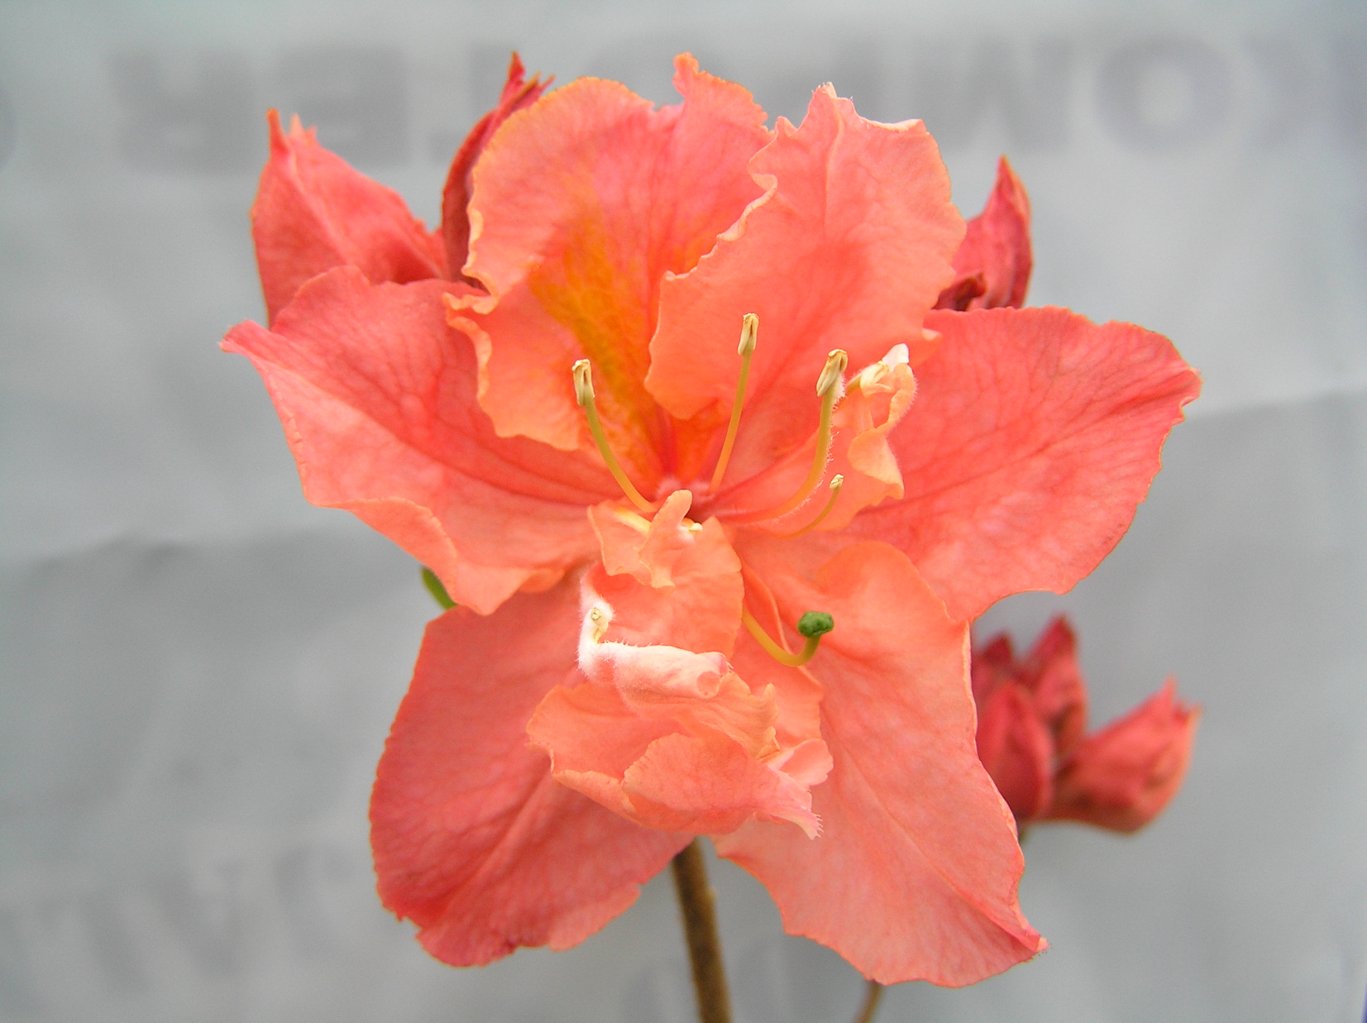 Azalia "Sarina" / Rhododendron az "Sarina"